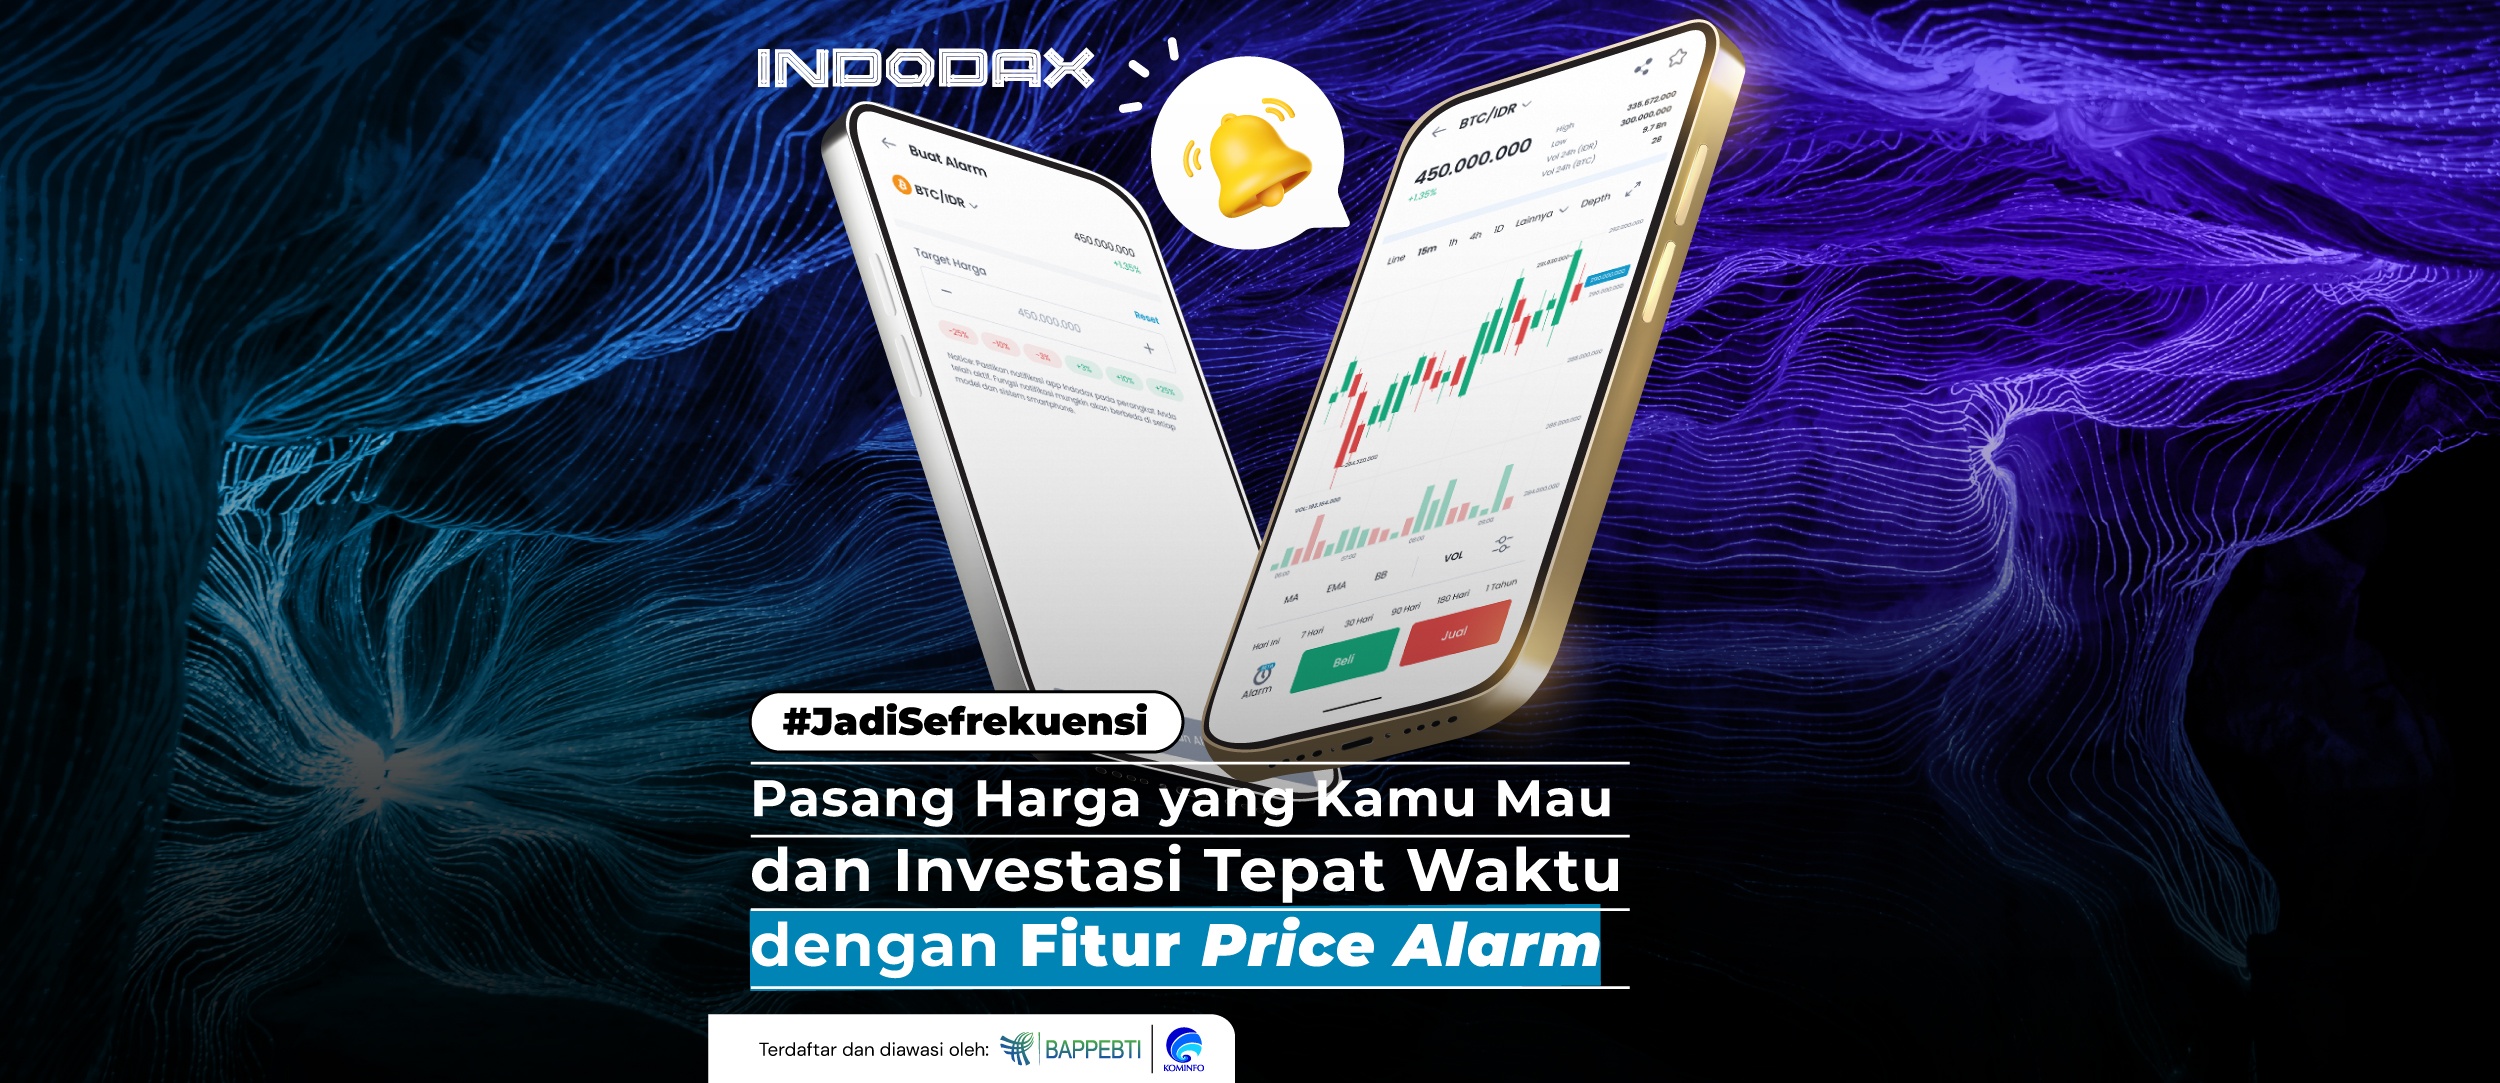 Sekarang, kamu bisa tahu harga aset kripto favorit kamu di harga yang kamu mau dengan fitur Price Alarm pada INDODAX Mobile App sehingga investasi #AsetMasaDepan kamu lebih tepat waktu.